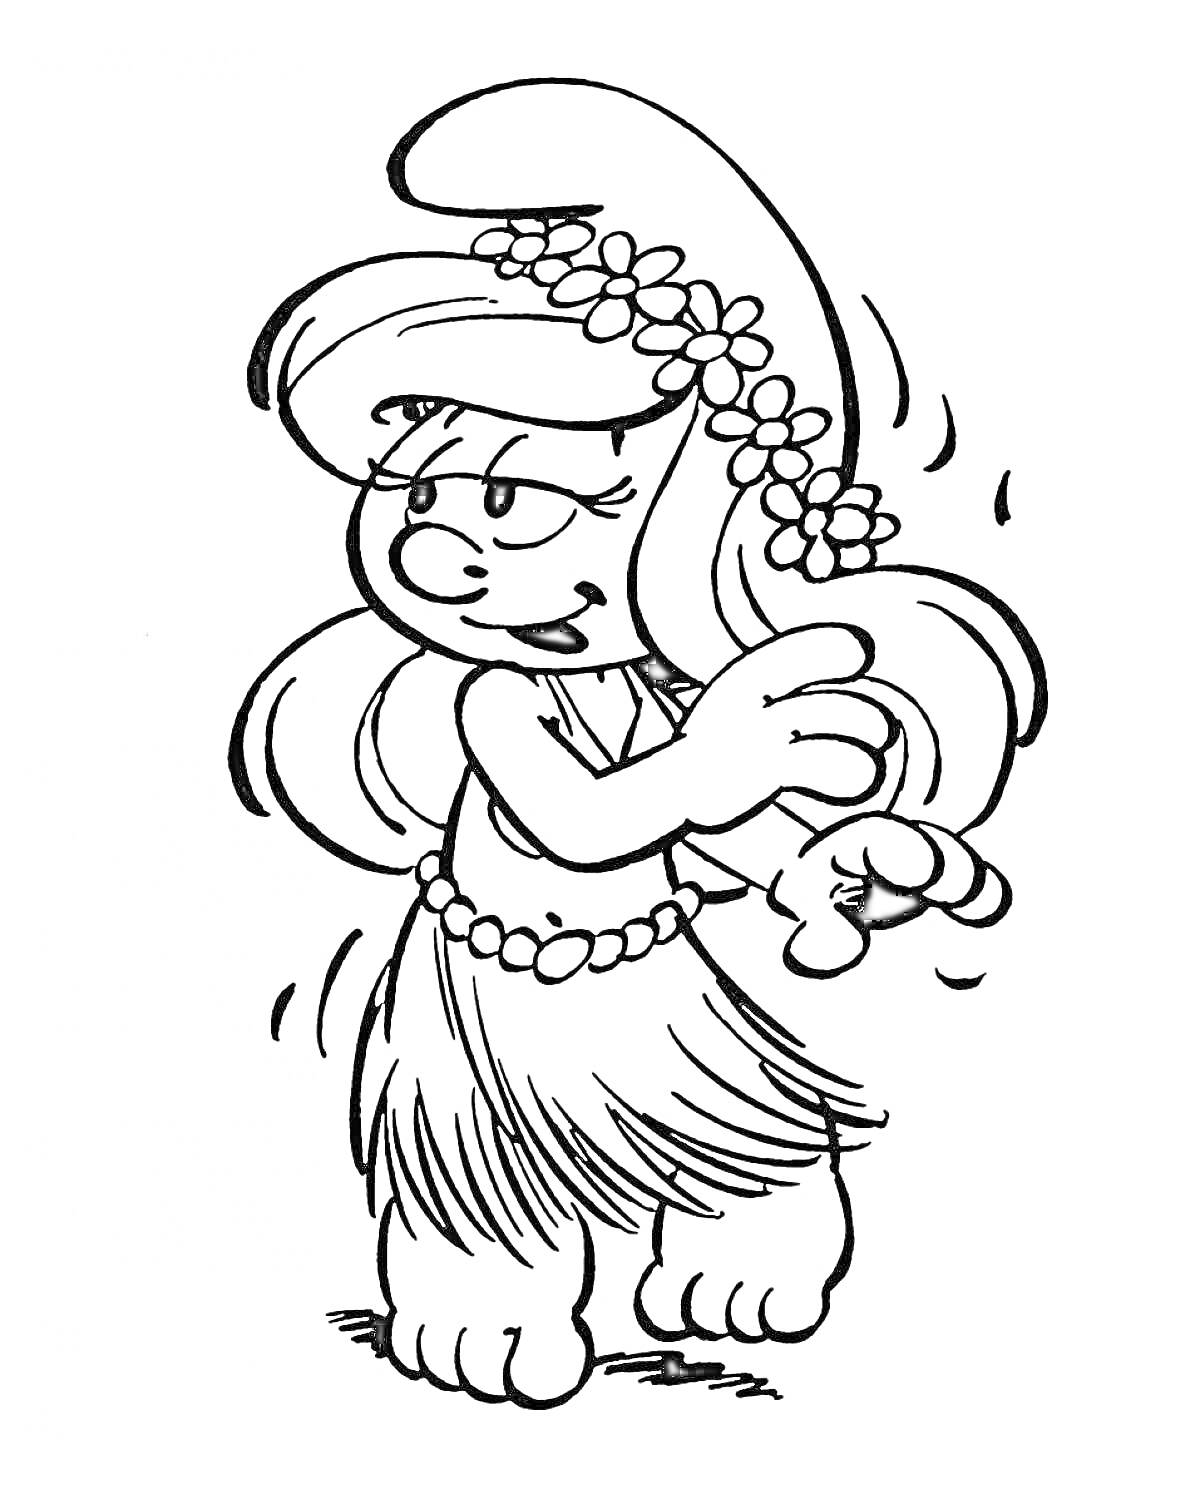 Смурфета в гавайской юбке с цветами в волосах